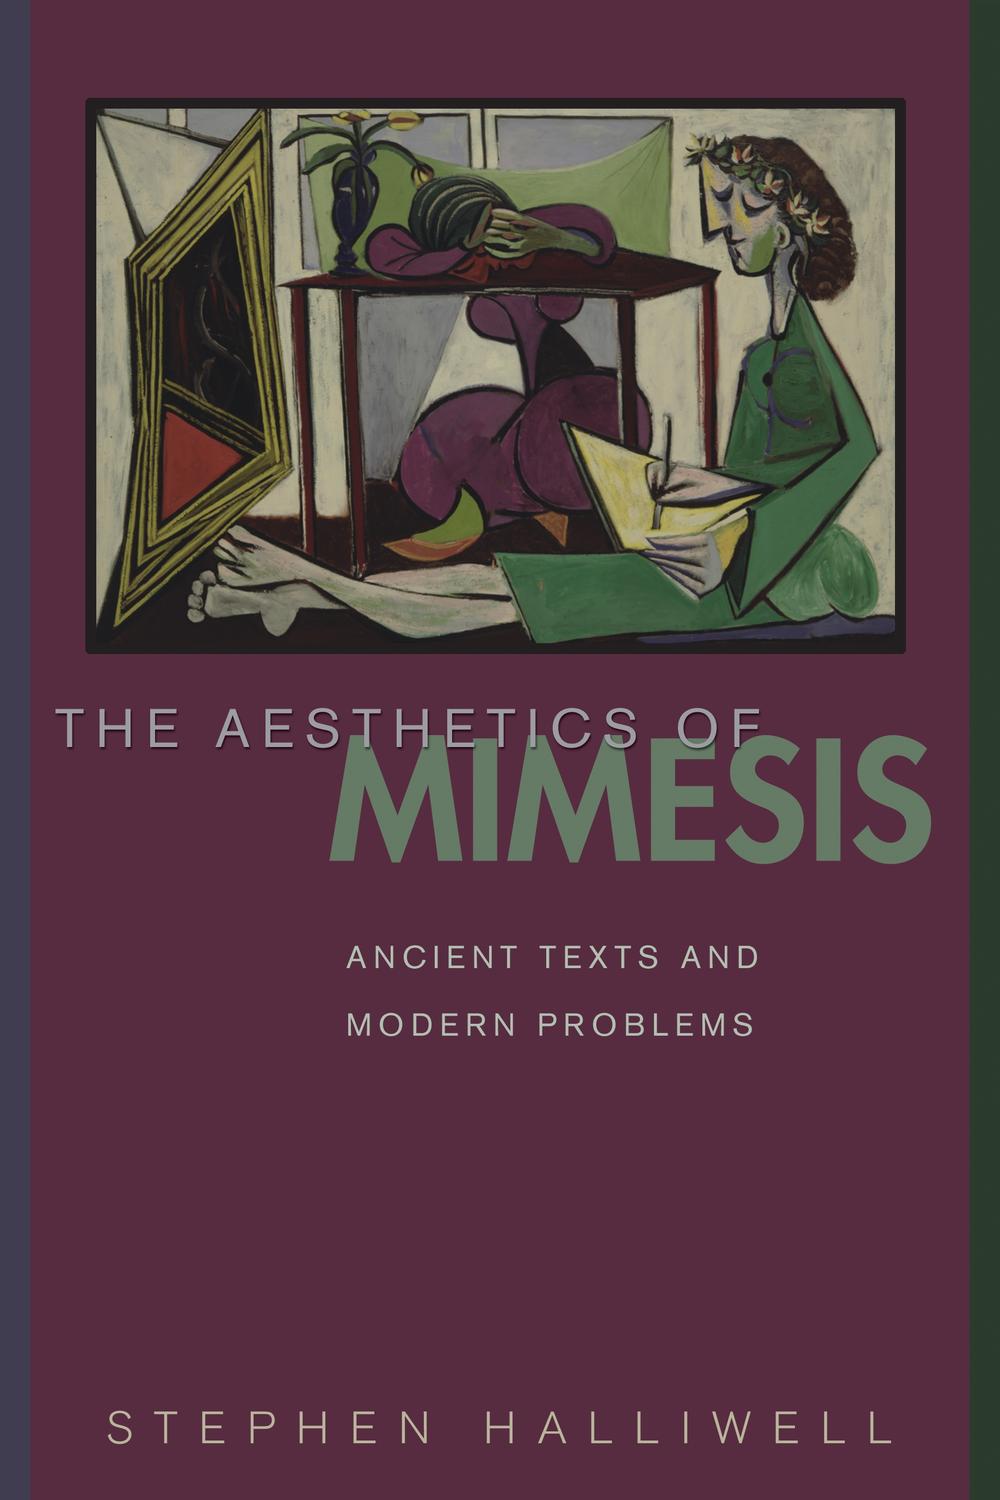 The Aesthetics of Mimesis - Stephen Halliwell